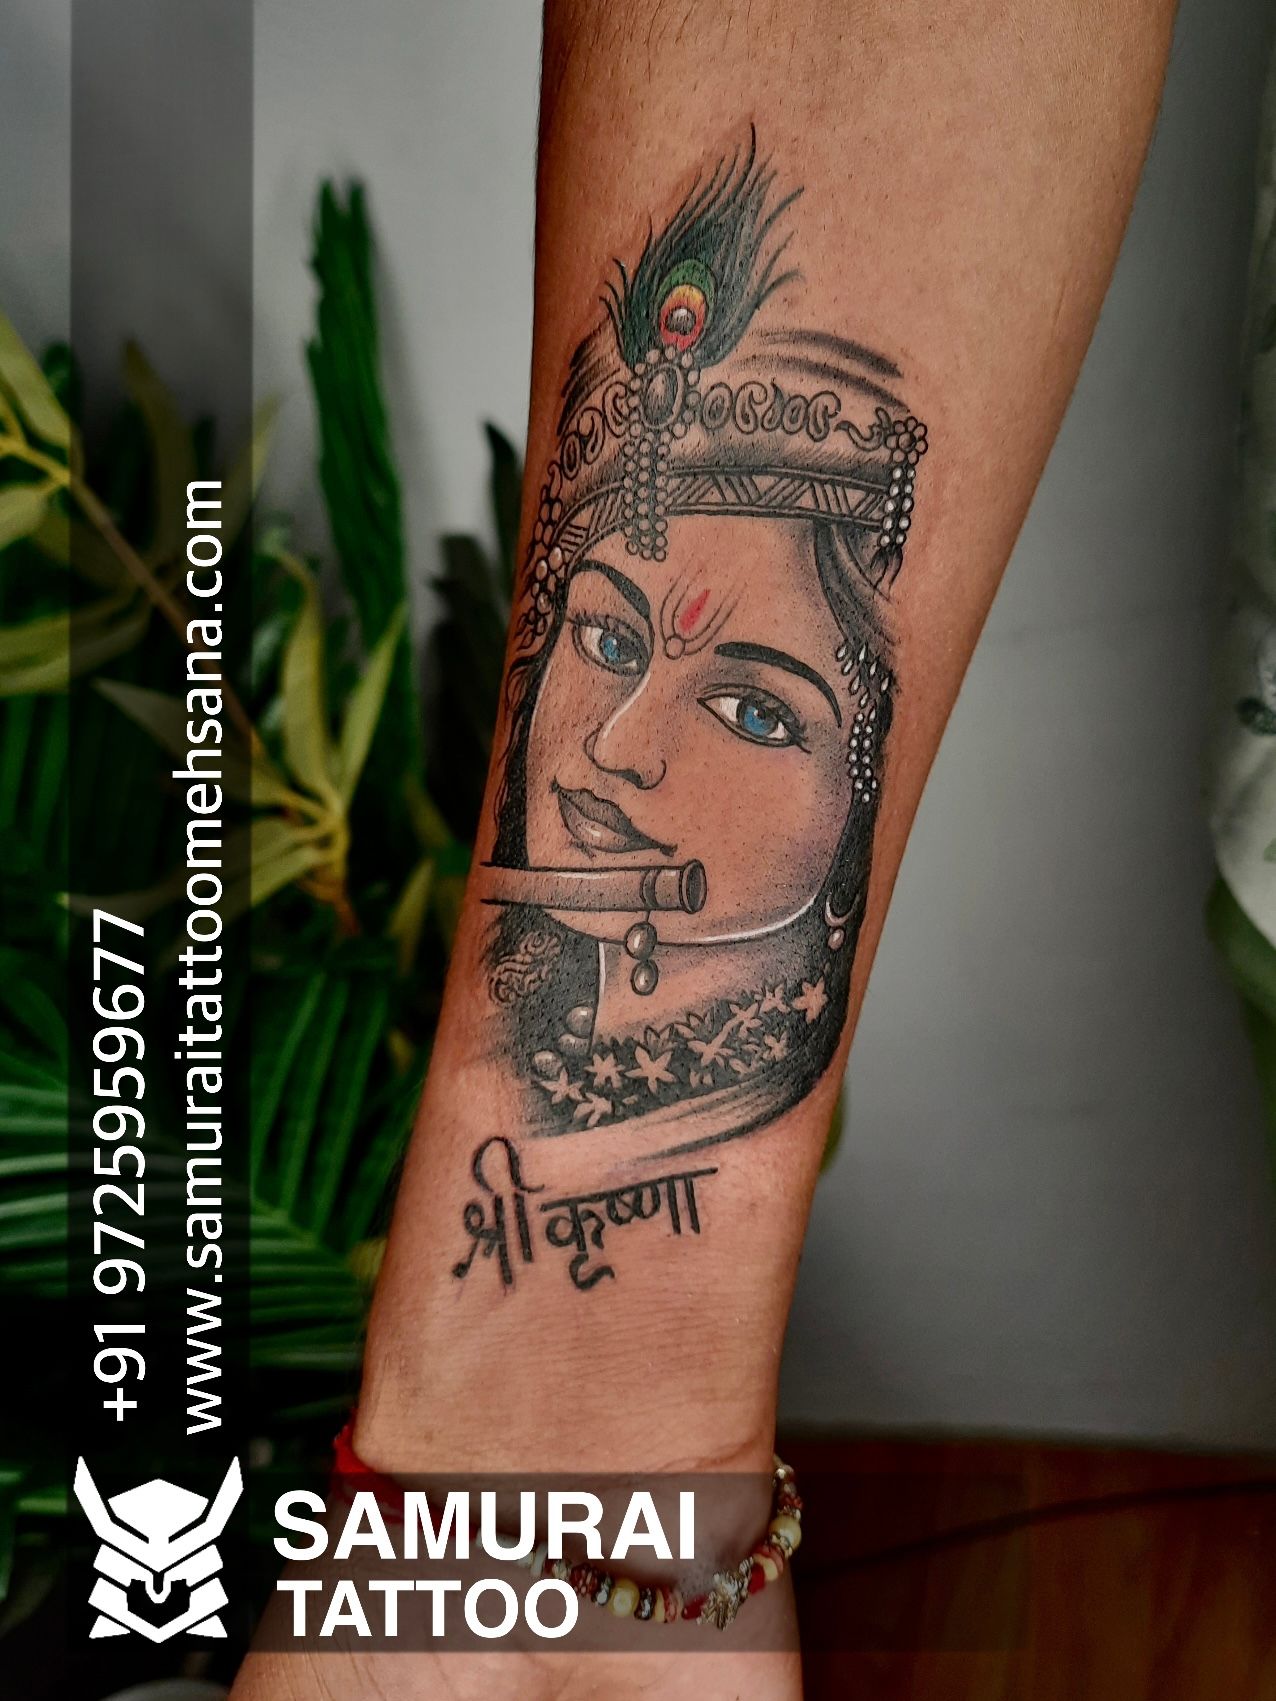 Krishna tattoo Tattoo for krishna Dwarkadhish tattoo Lord krishna tattoo  Krishna ji tattoo  Classy tattoos Krishna tattoo Tattoos